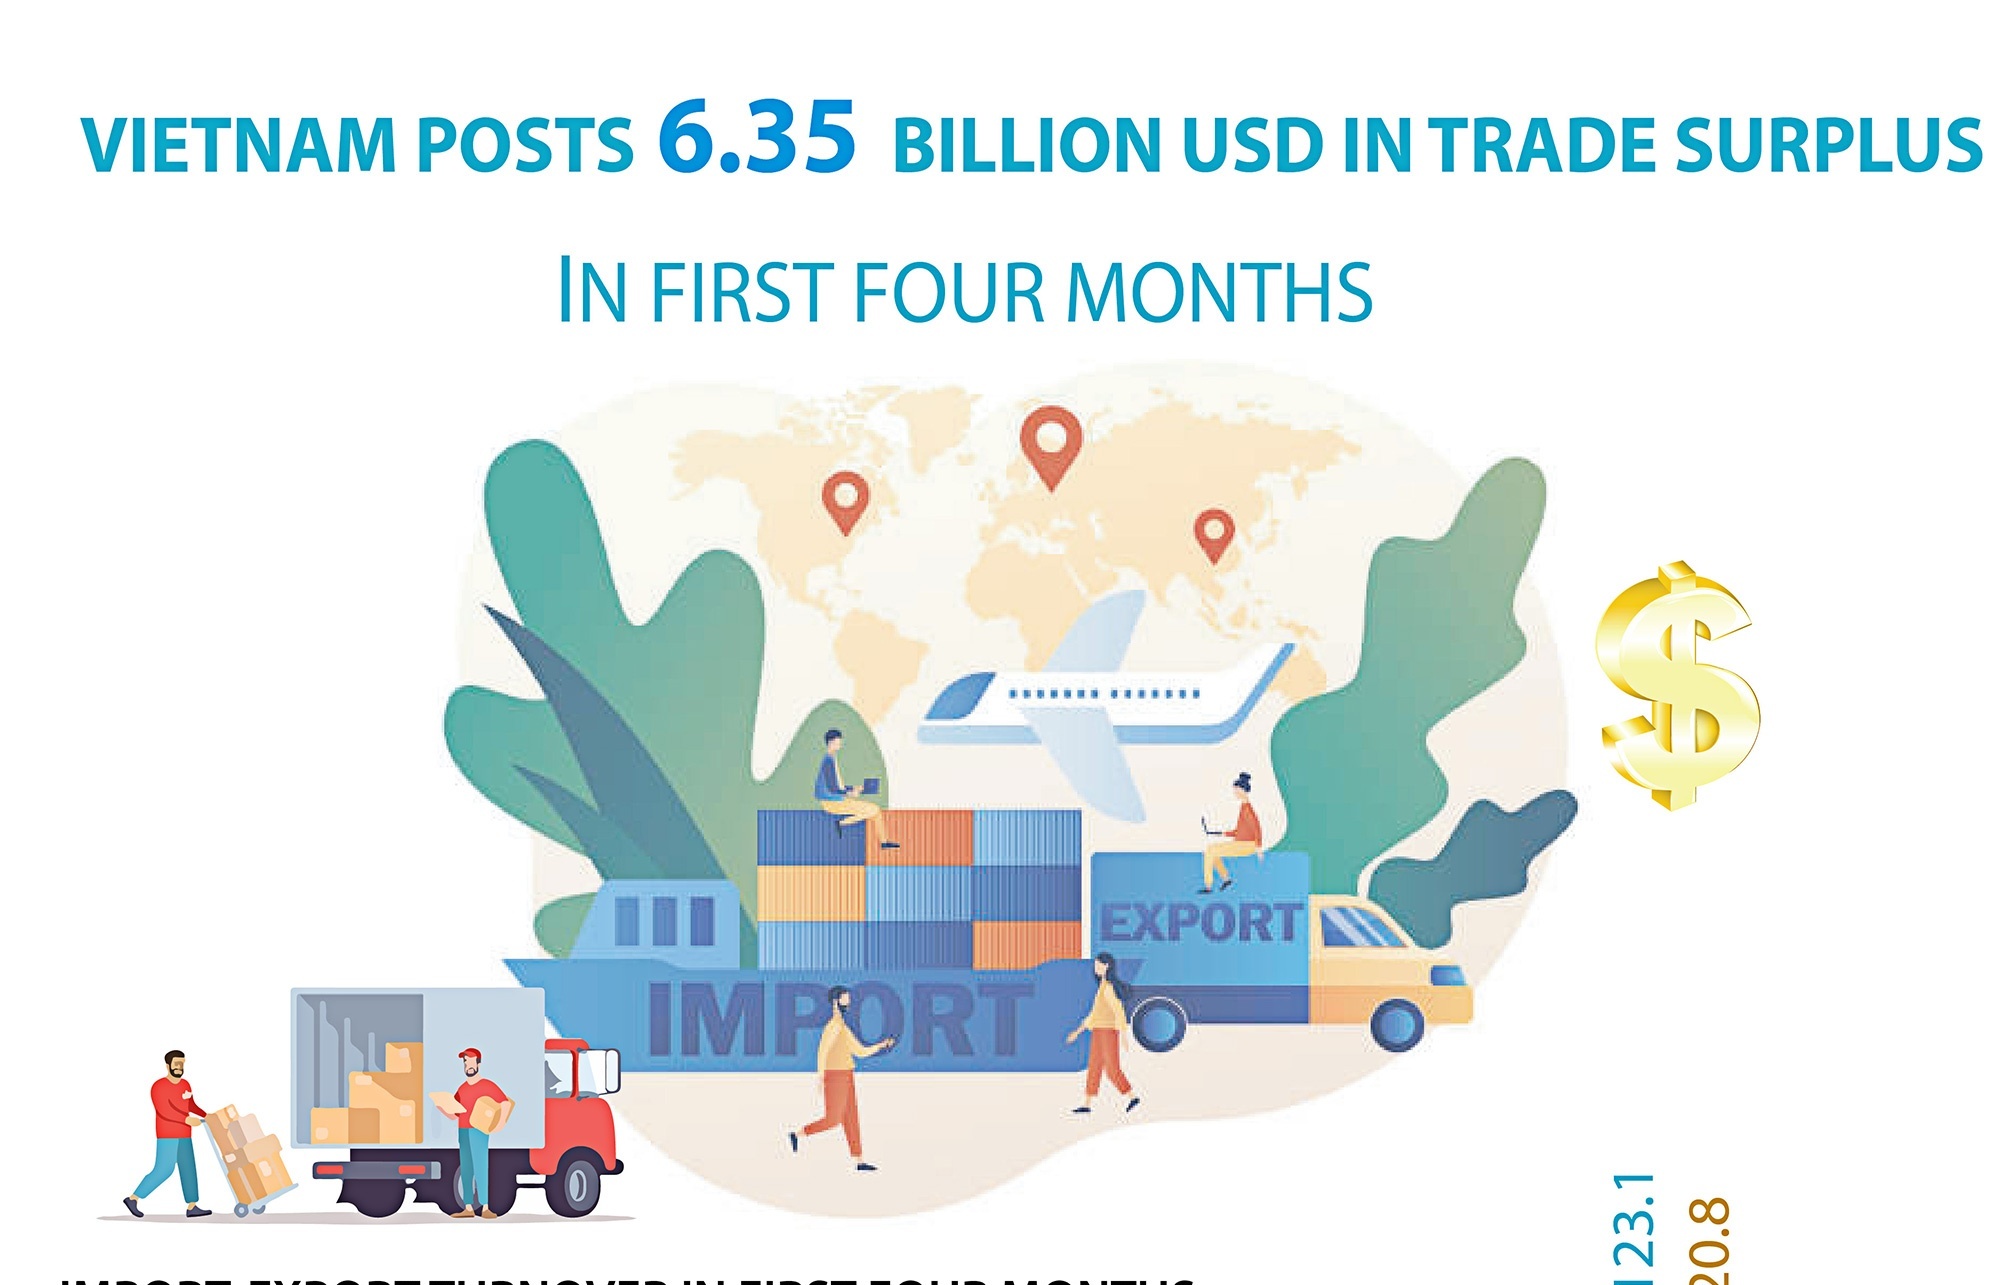 Vietnam posts 6.35 billion USD in trade surplus in first four months